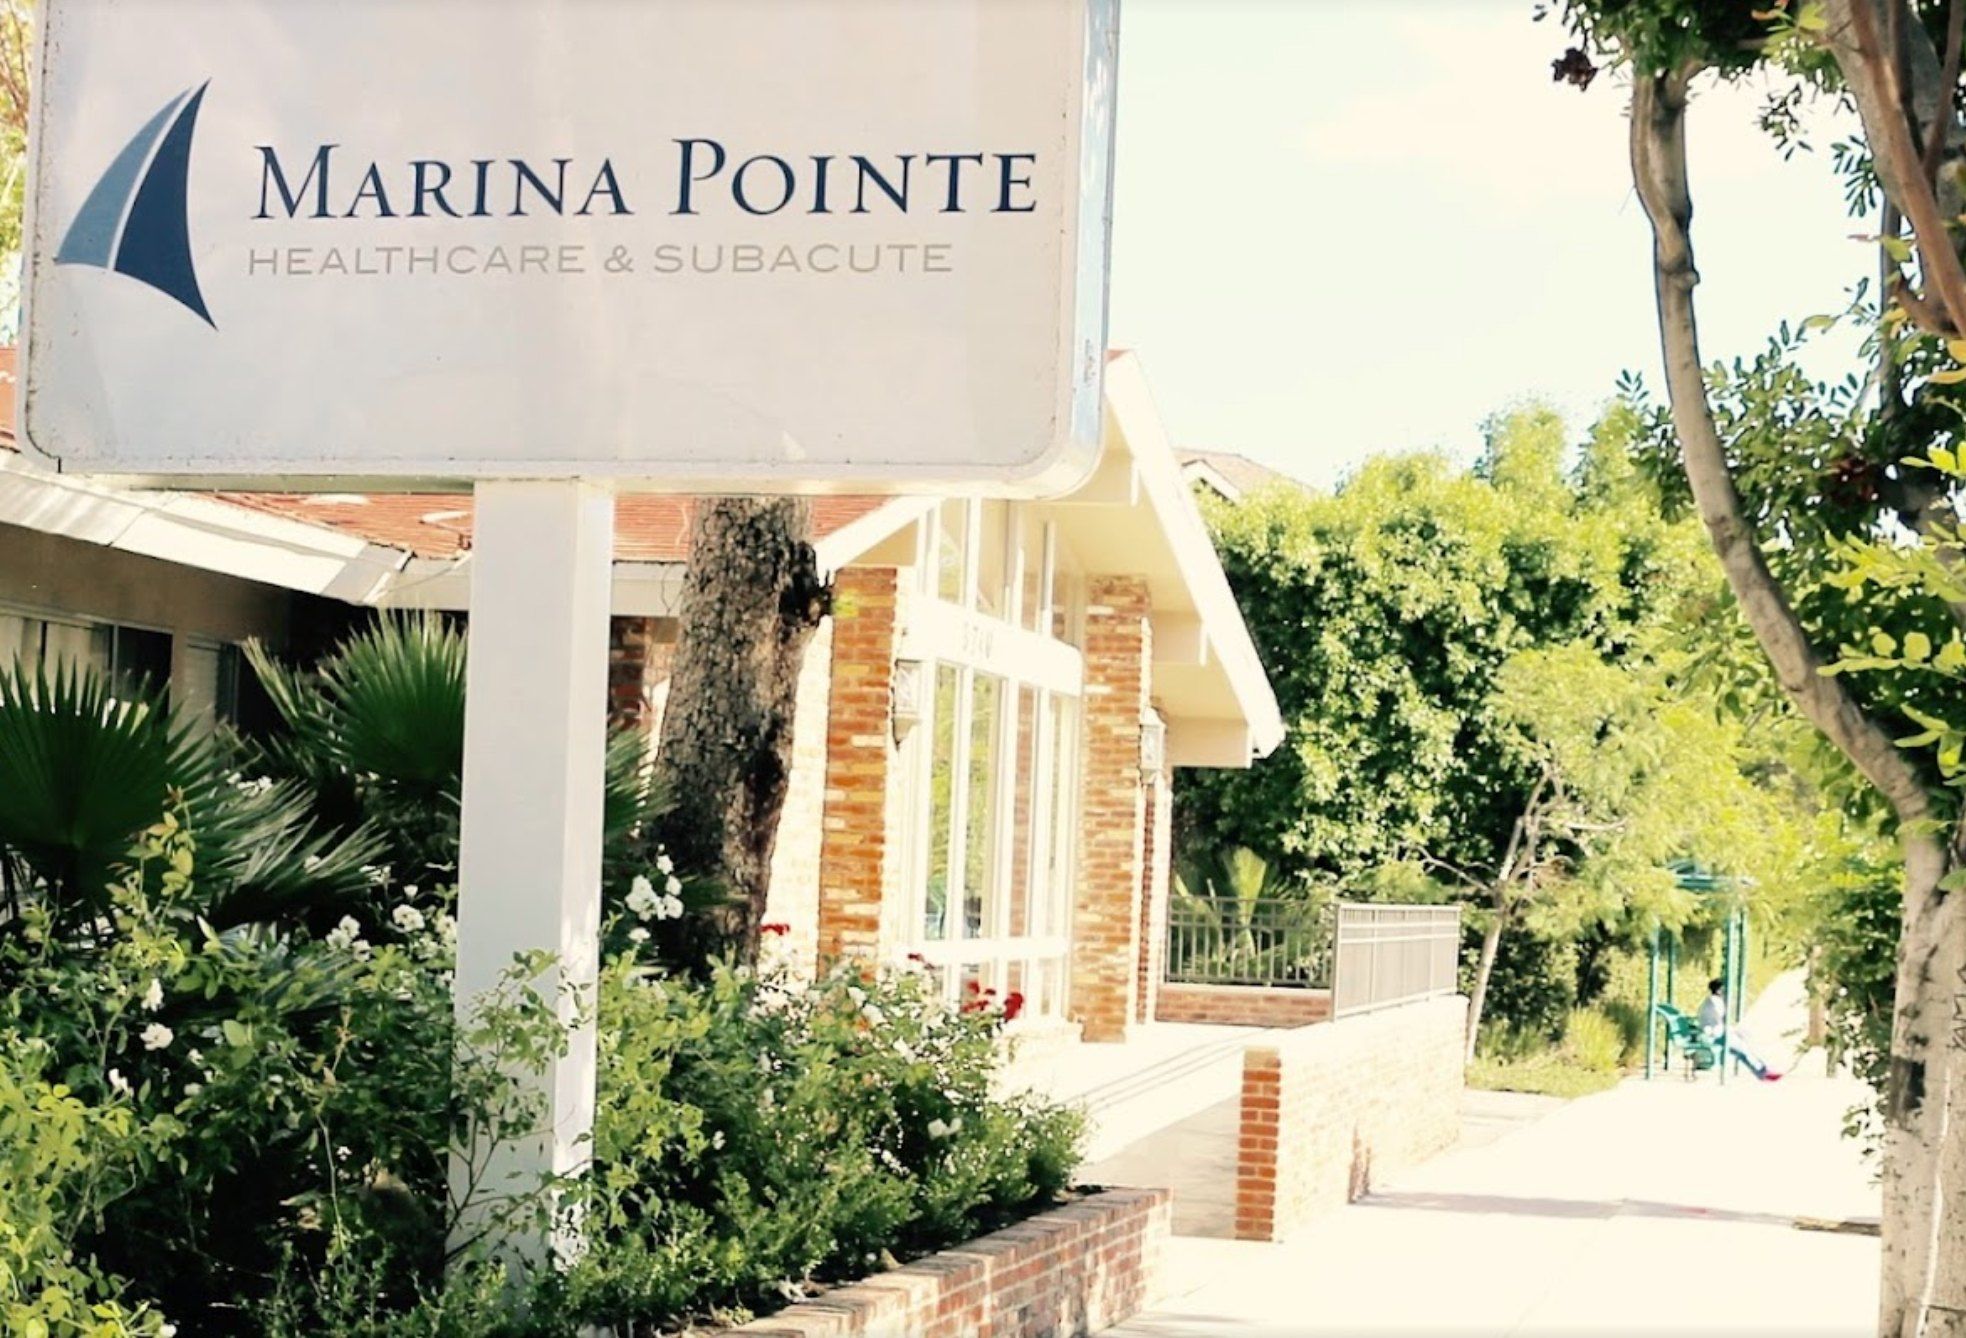 Marina Pointe Healthcare & Subacute 2